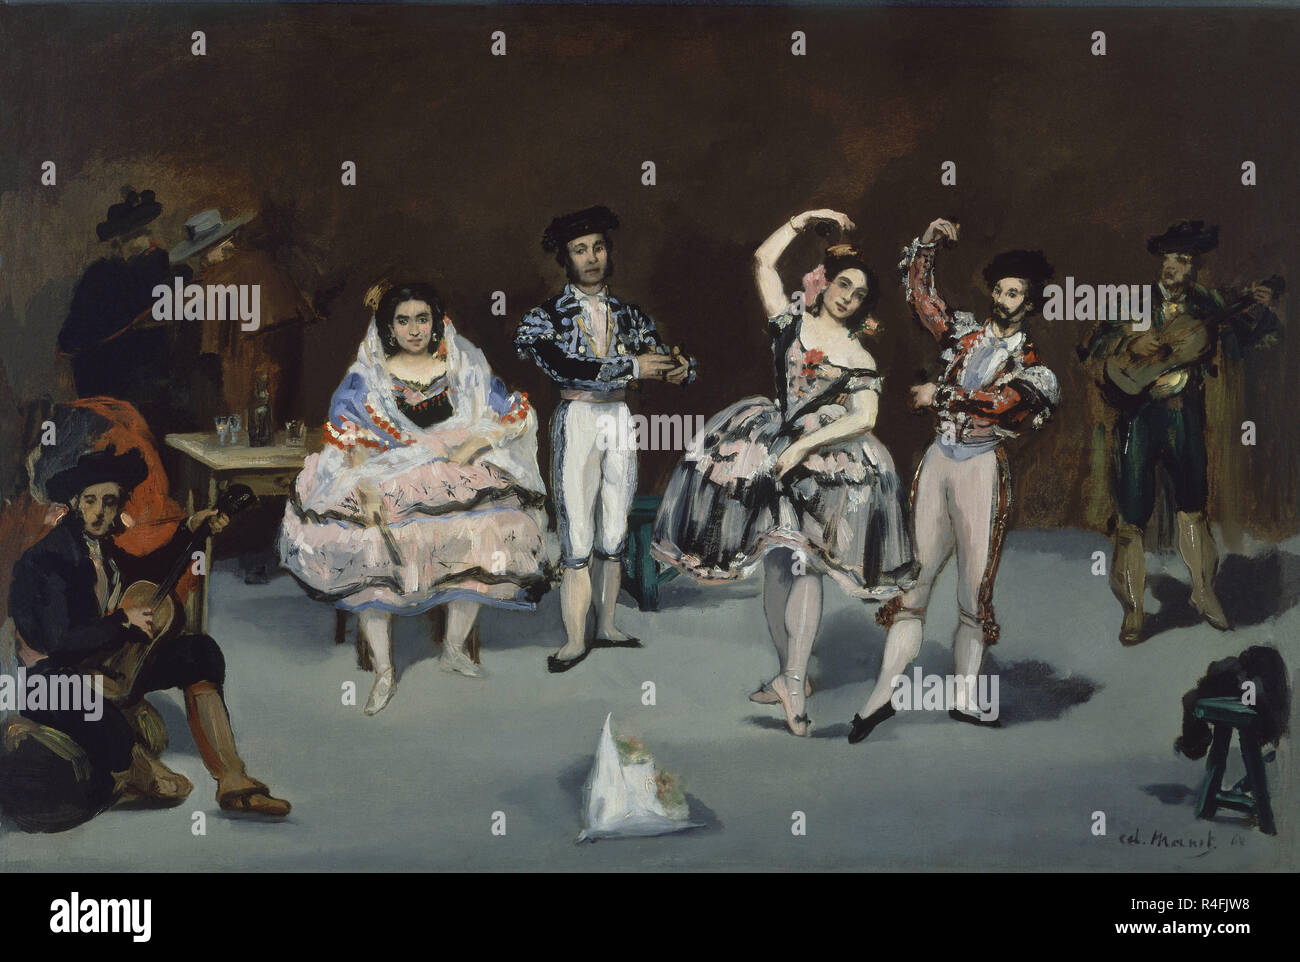 Ballet espagnol - 1862 - 61x91 cm - Huile sur toile. Auteur : MANET, EDOUARD. Emplacement : collection privée. WASHINGTON D. C. Banque D'Images